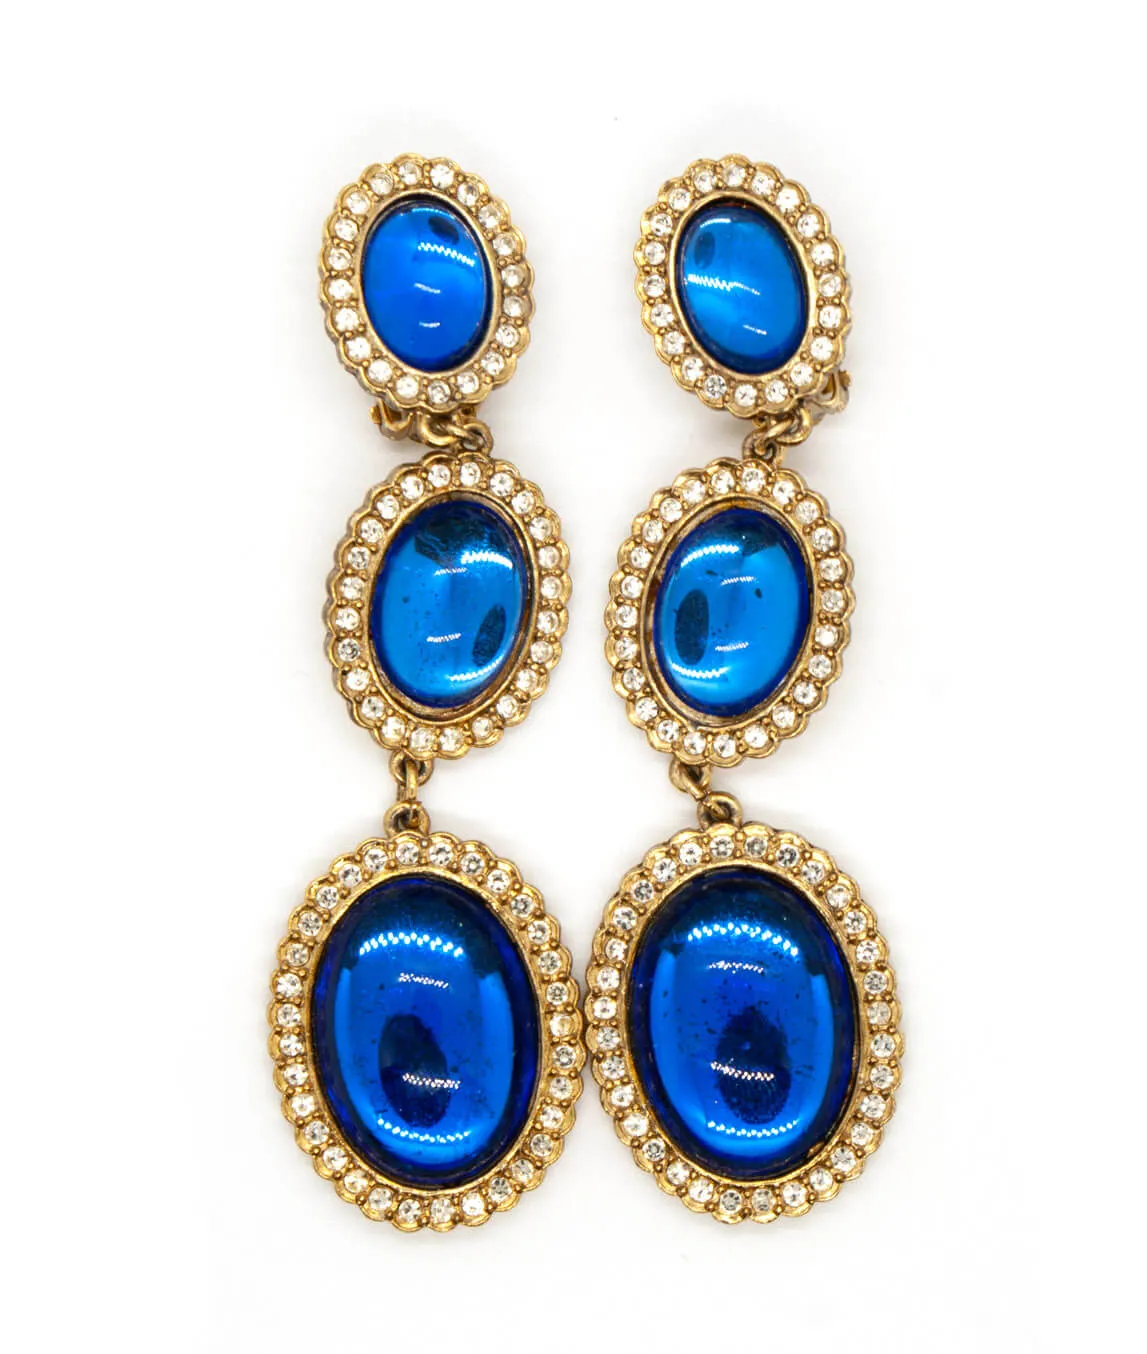 Butler & Wilson blue glass drop earrings